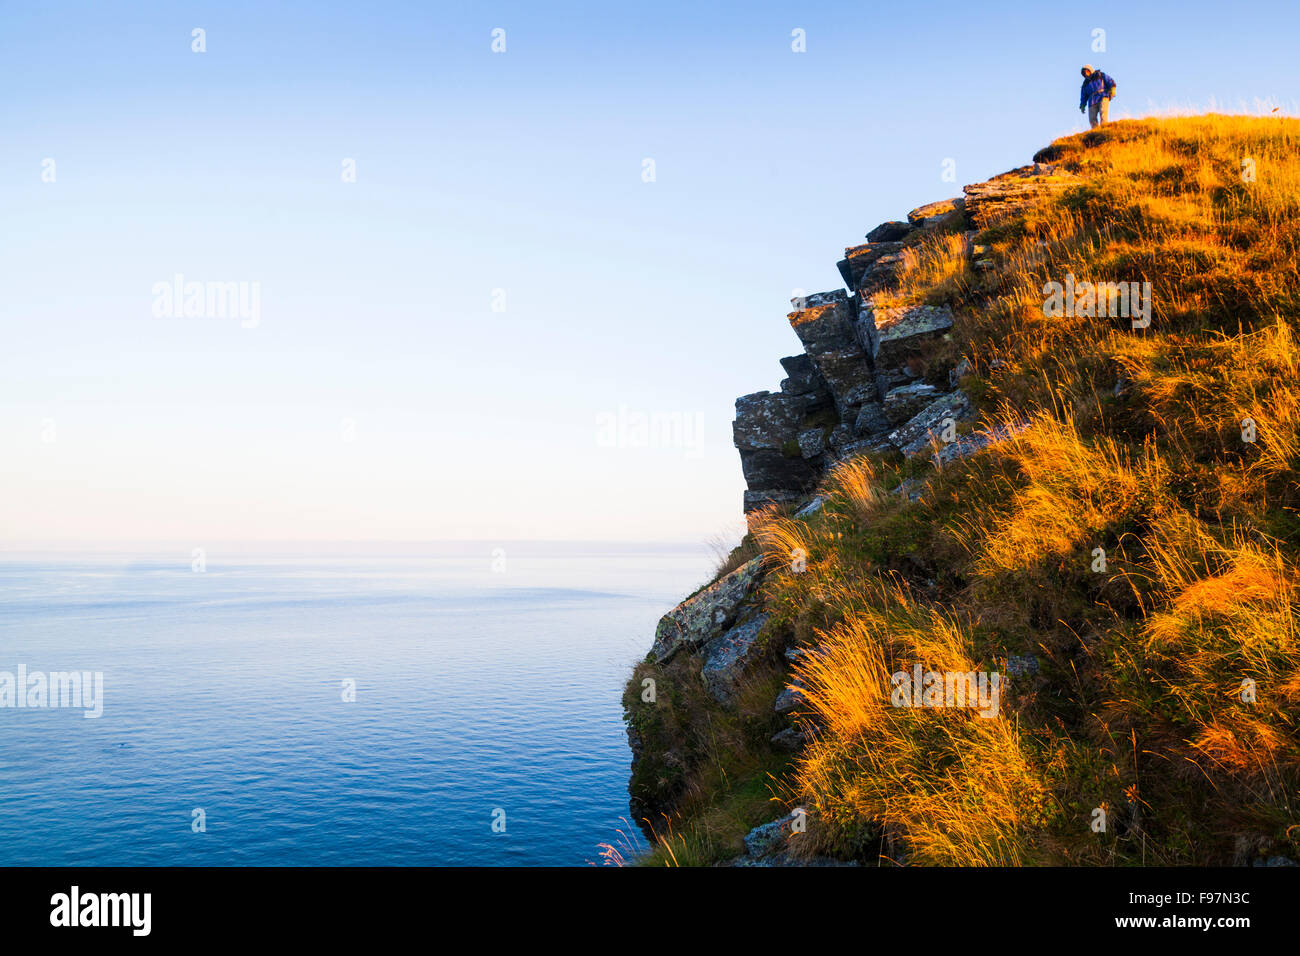 Ein Wanderer steht auf einer hohen Klippe von Vaeroy Island, Lofoten Inseln, Norwegen. Stockfoto